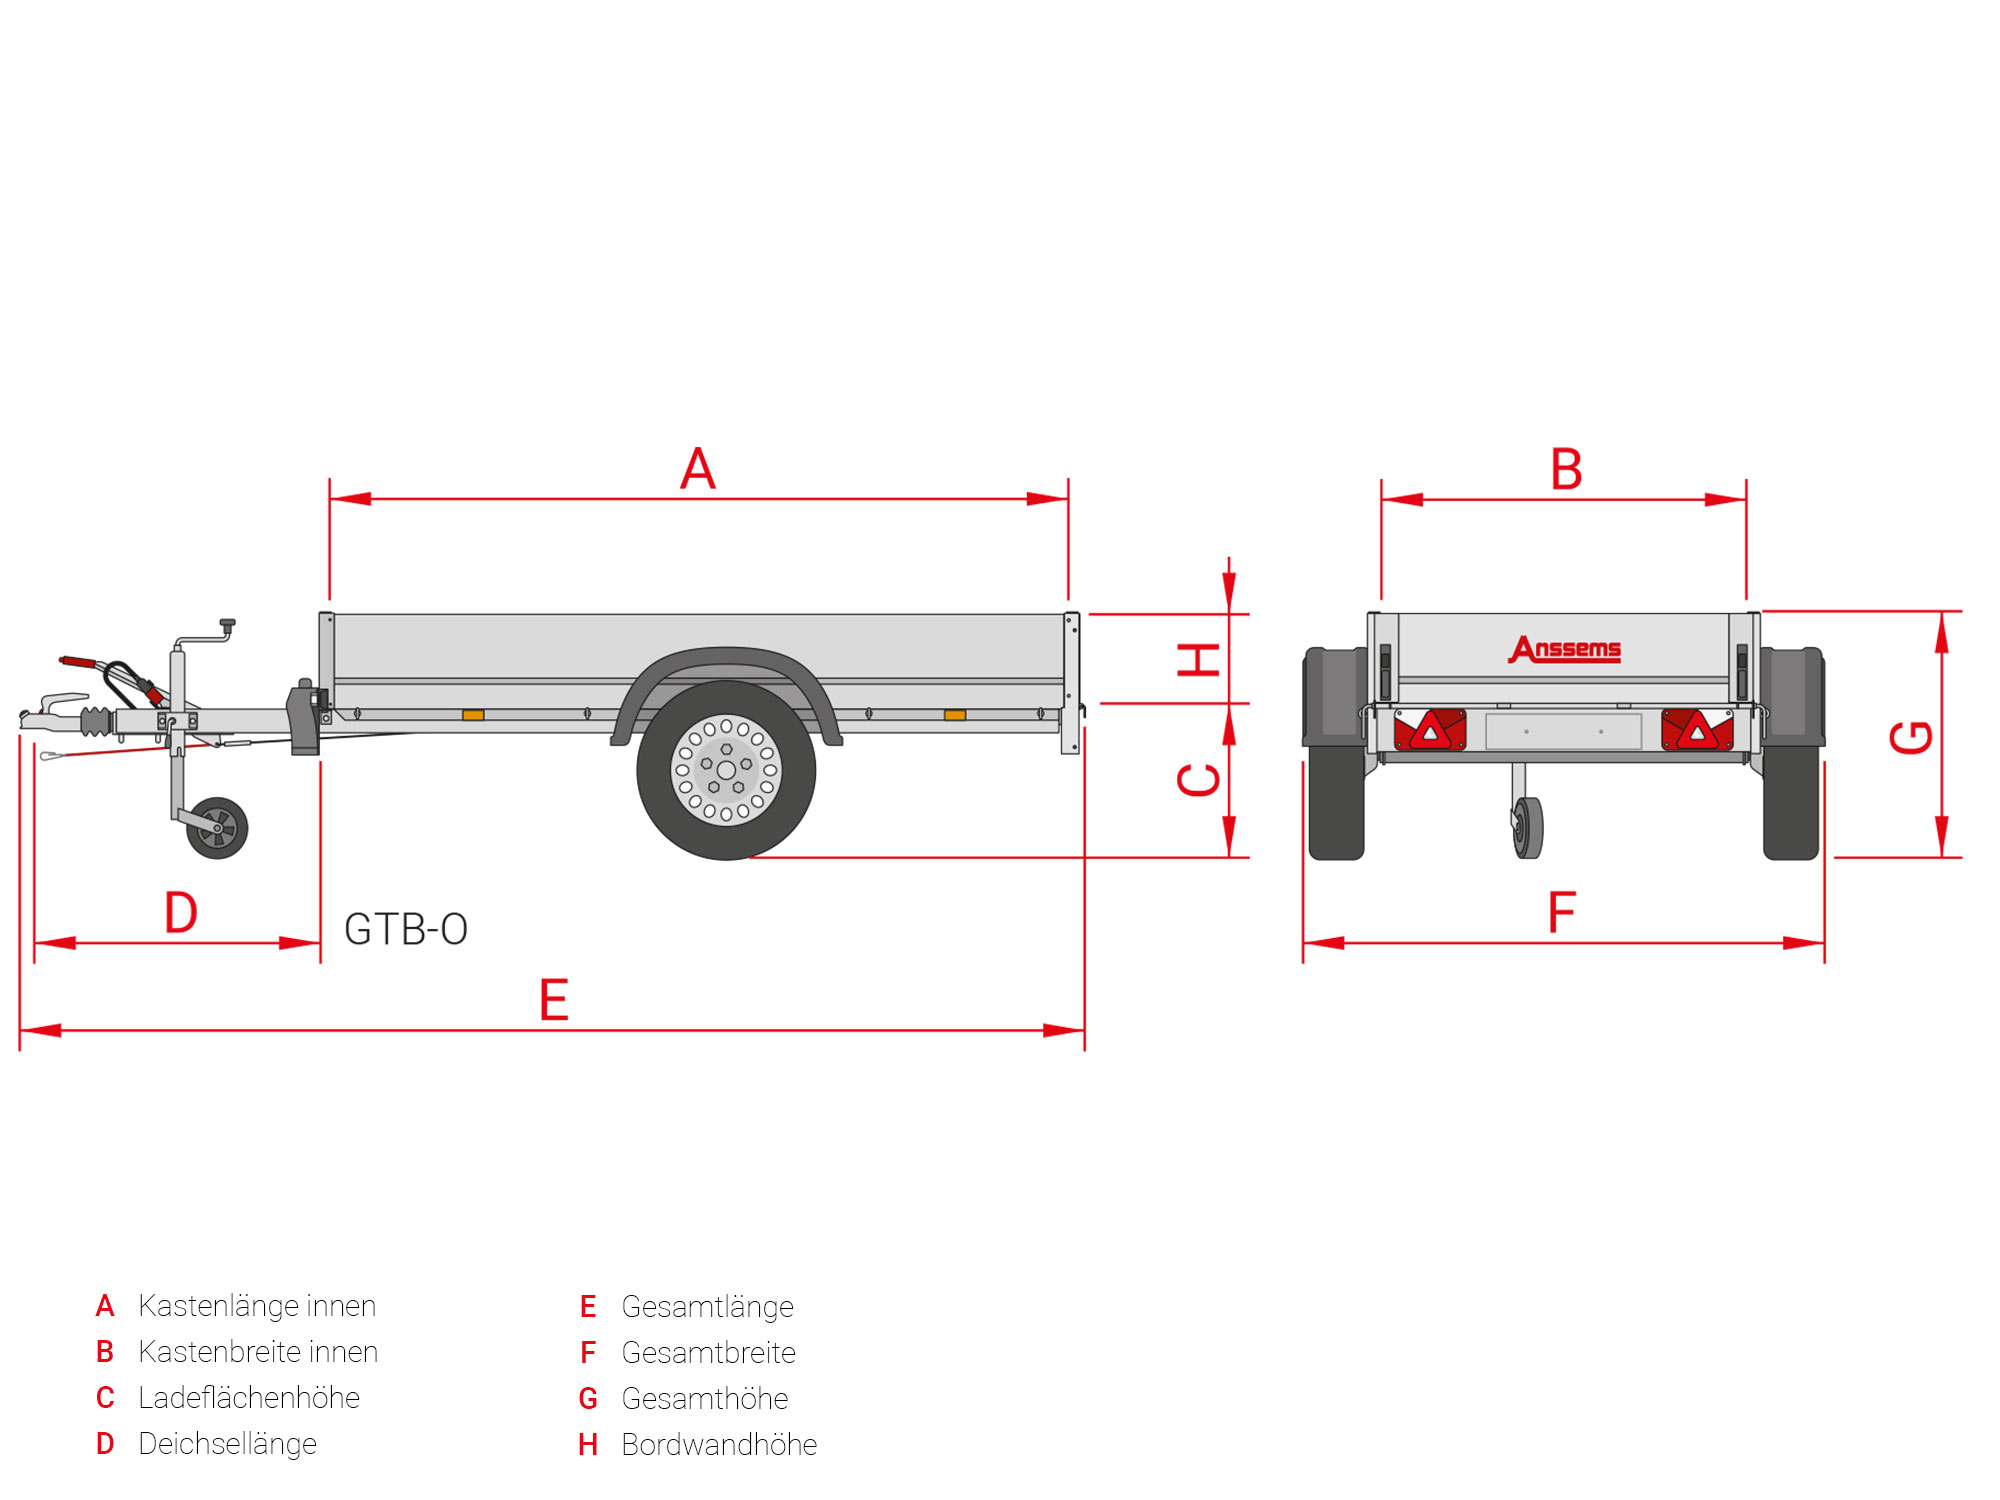 Anssems PKW Anhänger Tieflader Alu 1200 kg, Ladefläche 2,51x 1,26 m